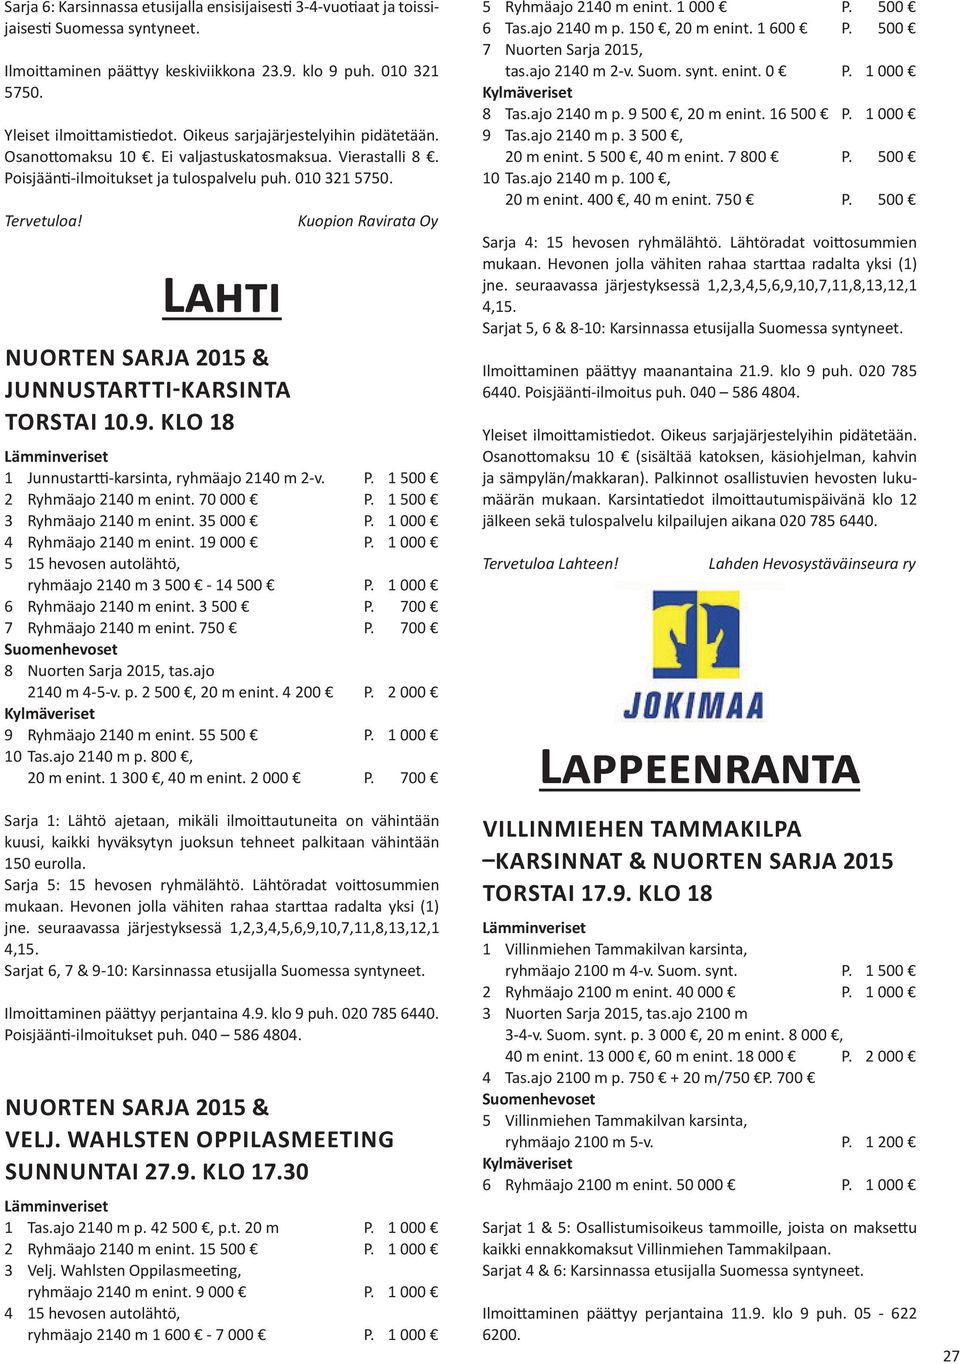 KLO 18 Kuopion Ravirata Oy 1 Junnustartti-karsinta, ryhmäajo 2140 m 2-v. P. 1 500 2 Ryhmäajo 2140 m enint. 70 000 P. 1 500 3 Ryhmäajo 2140 m enint. 35 000 P. 1 000 4 Ryhmäajo 2140 m enint. 19 000 P.